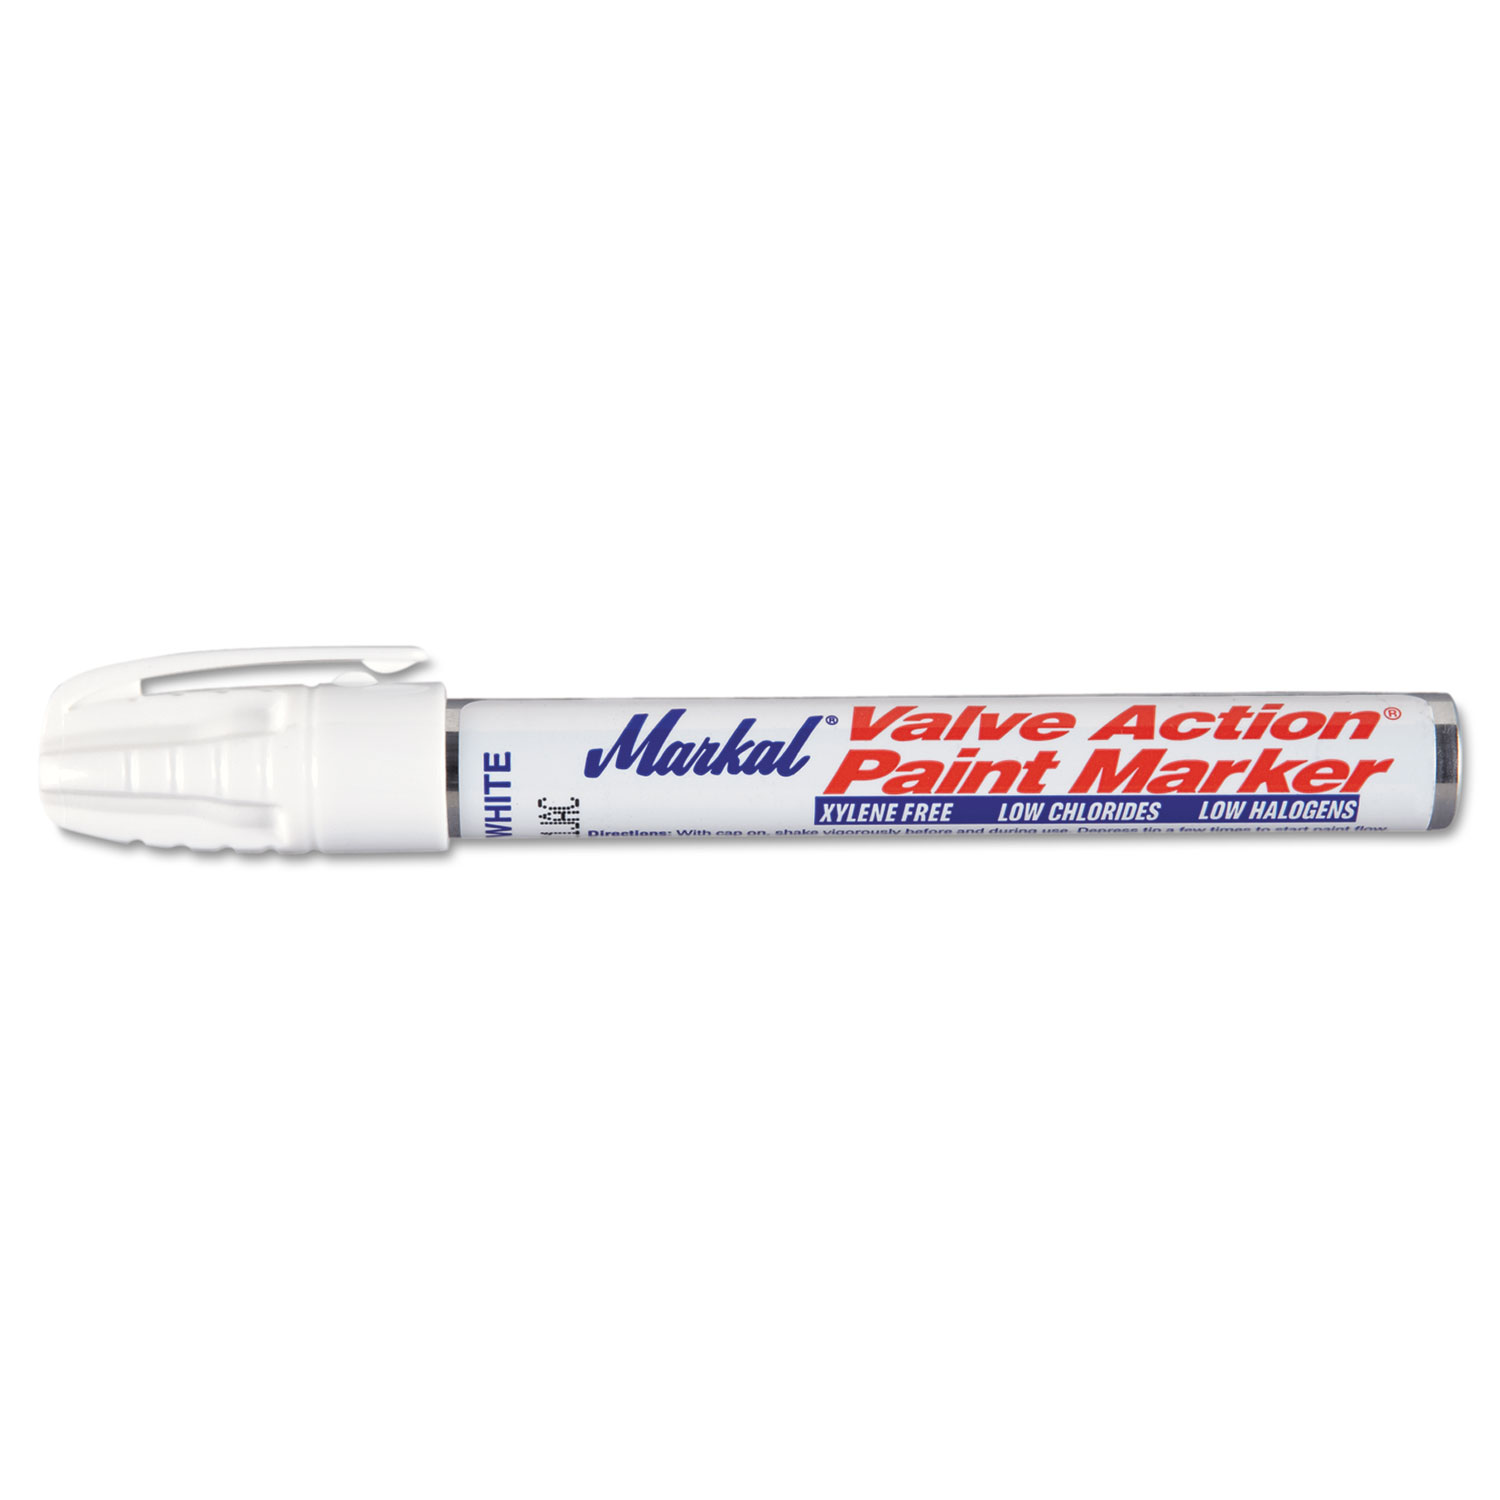  Markal 96820 Valve Action Paint Marker 96820, Medium Bullet Tip, White (MRK96820) 